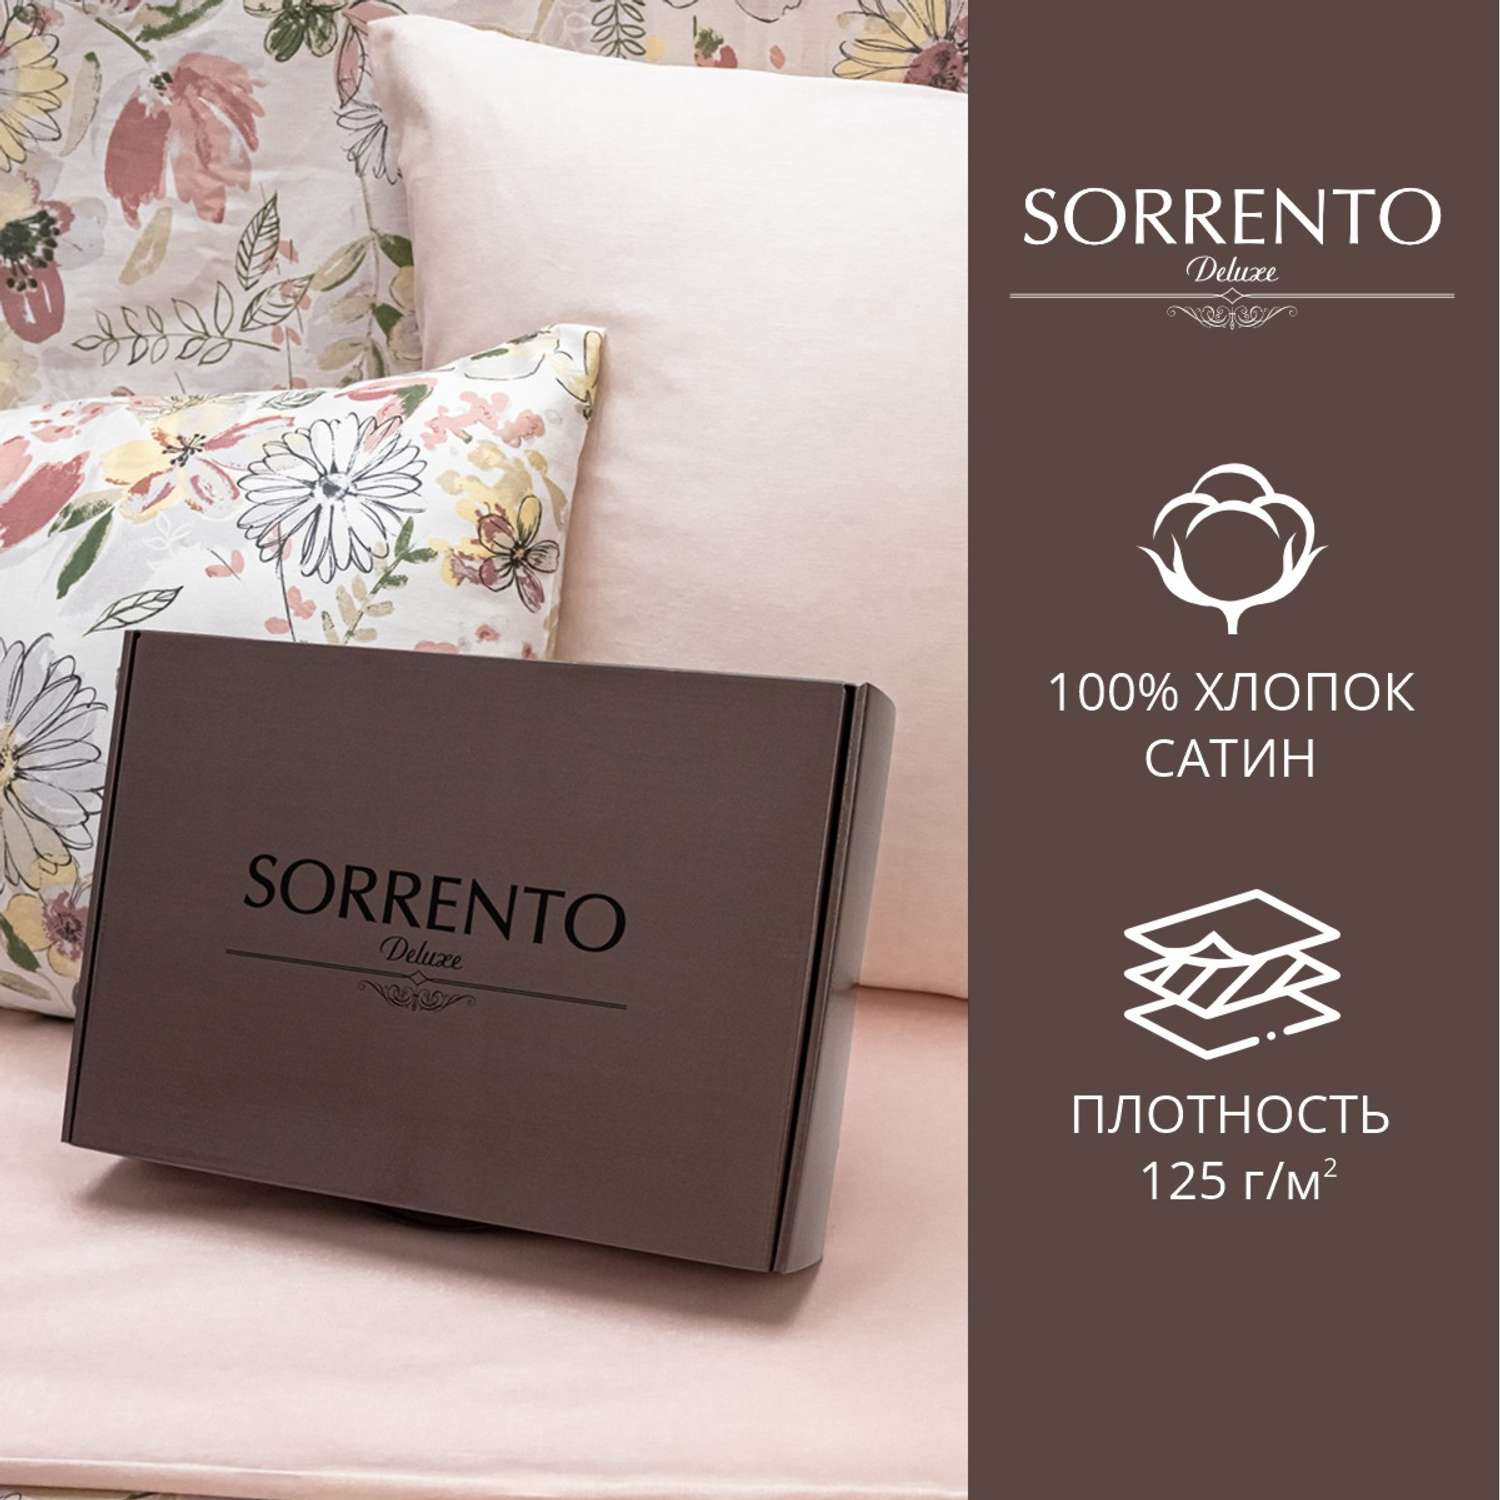 Комплект постельного белья SORRENTO DELUXE Сарита 2-спальный макси 4 наволочки рис.6020-1+4568а-1 - фото 3